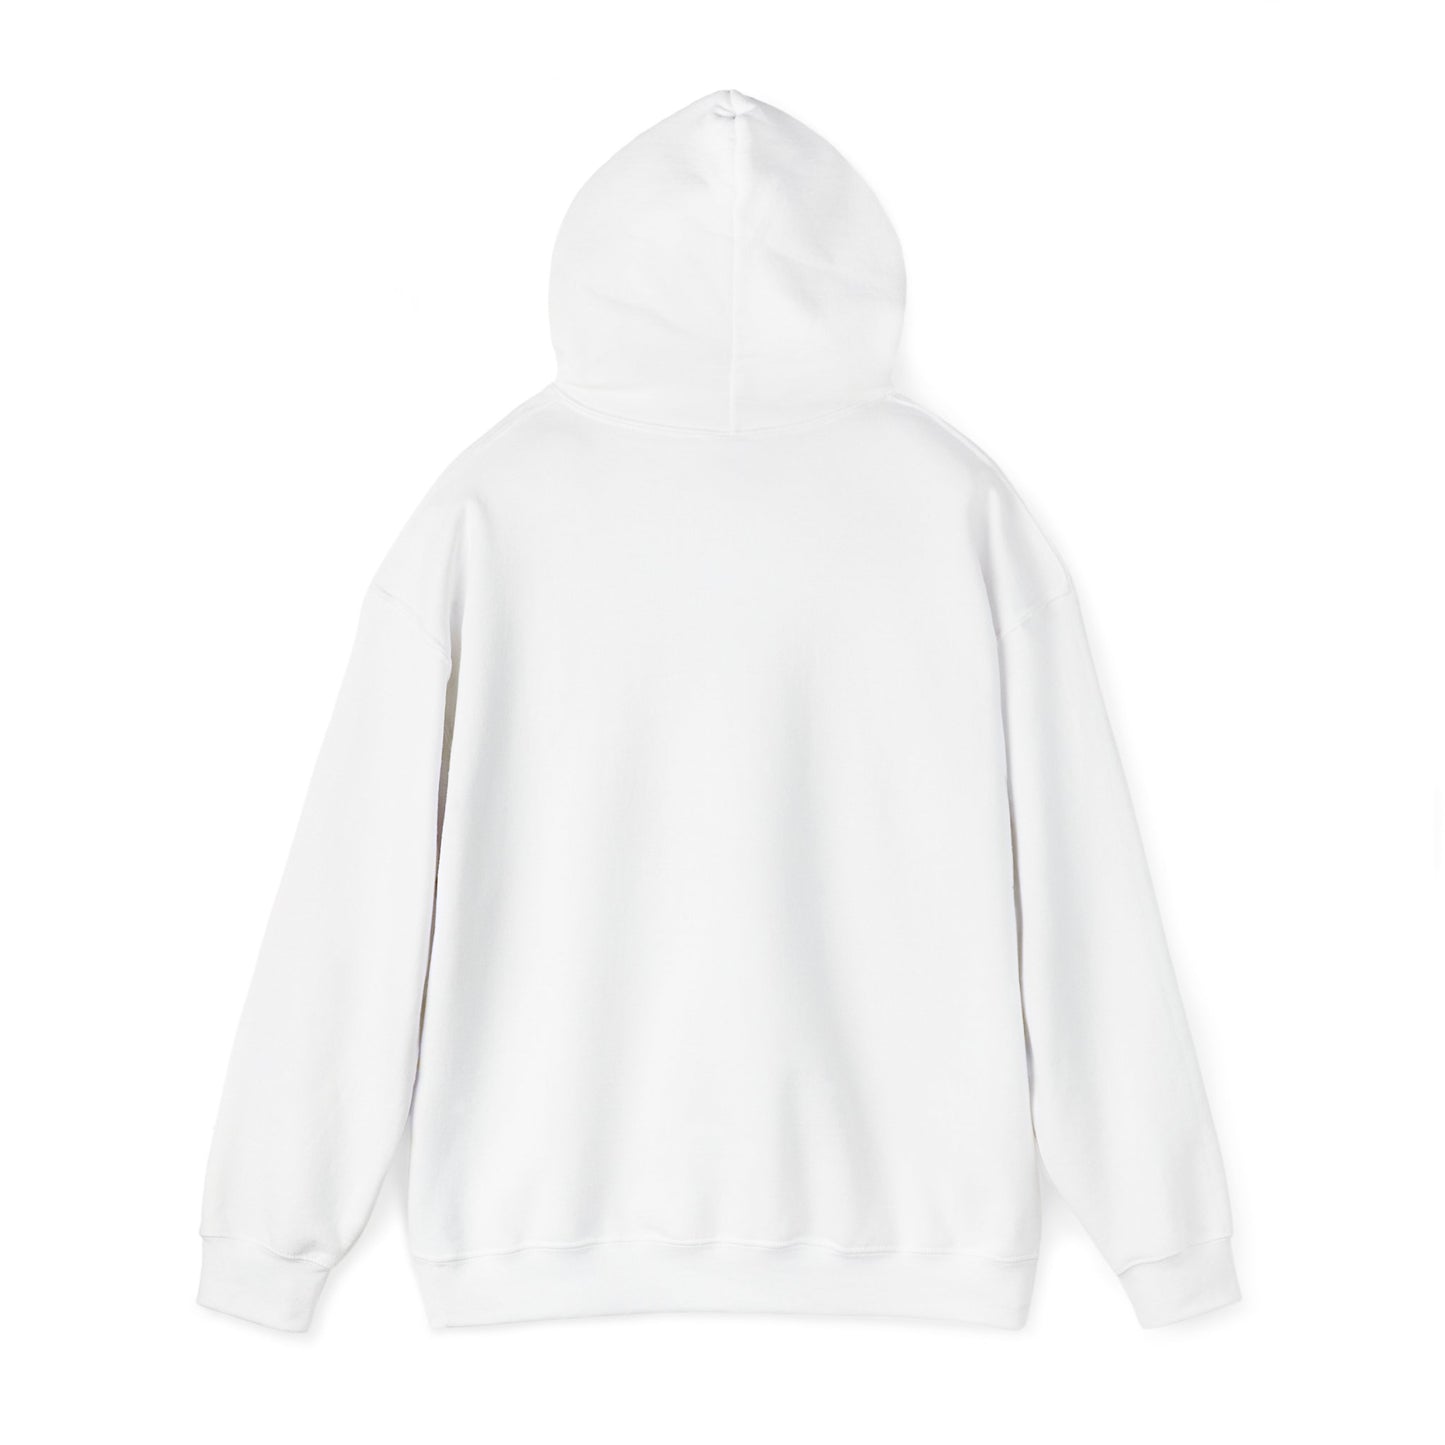 Gangsta Wrapper Unisex Heavy Blend™ Hooded Sweatshirt